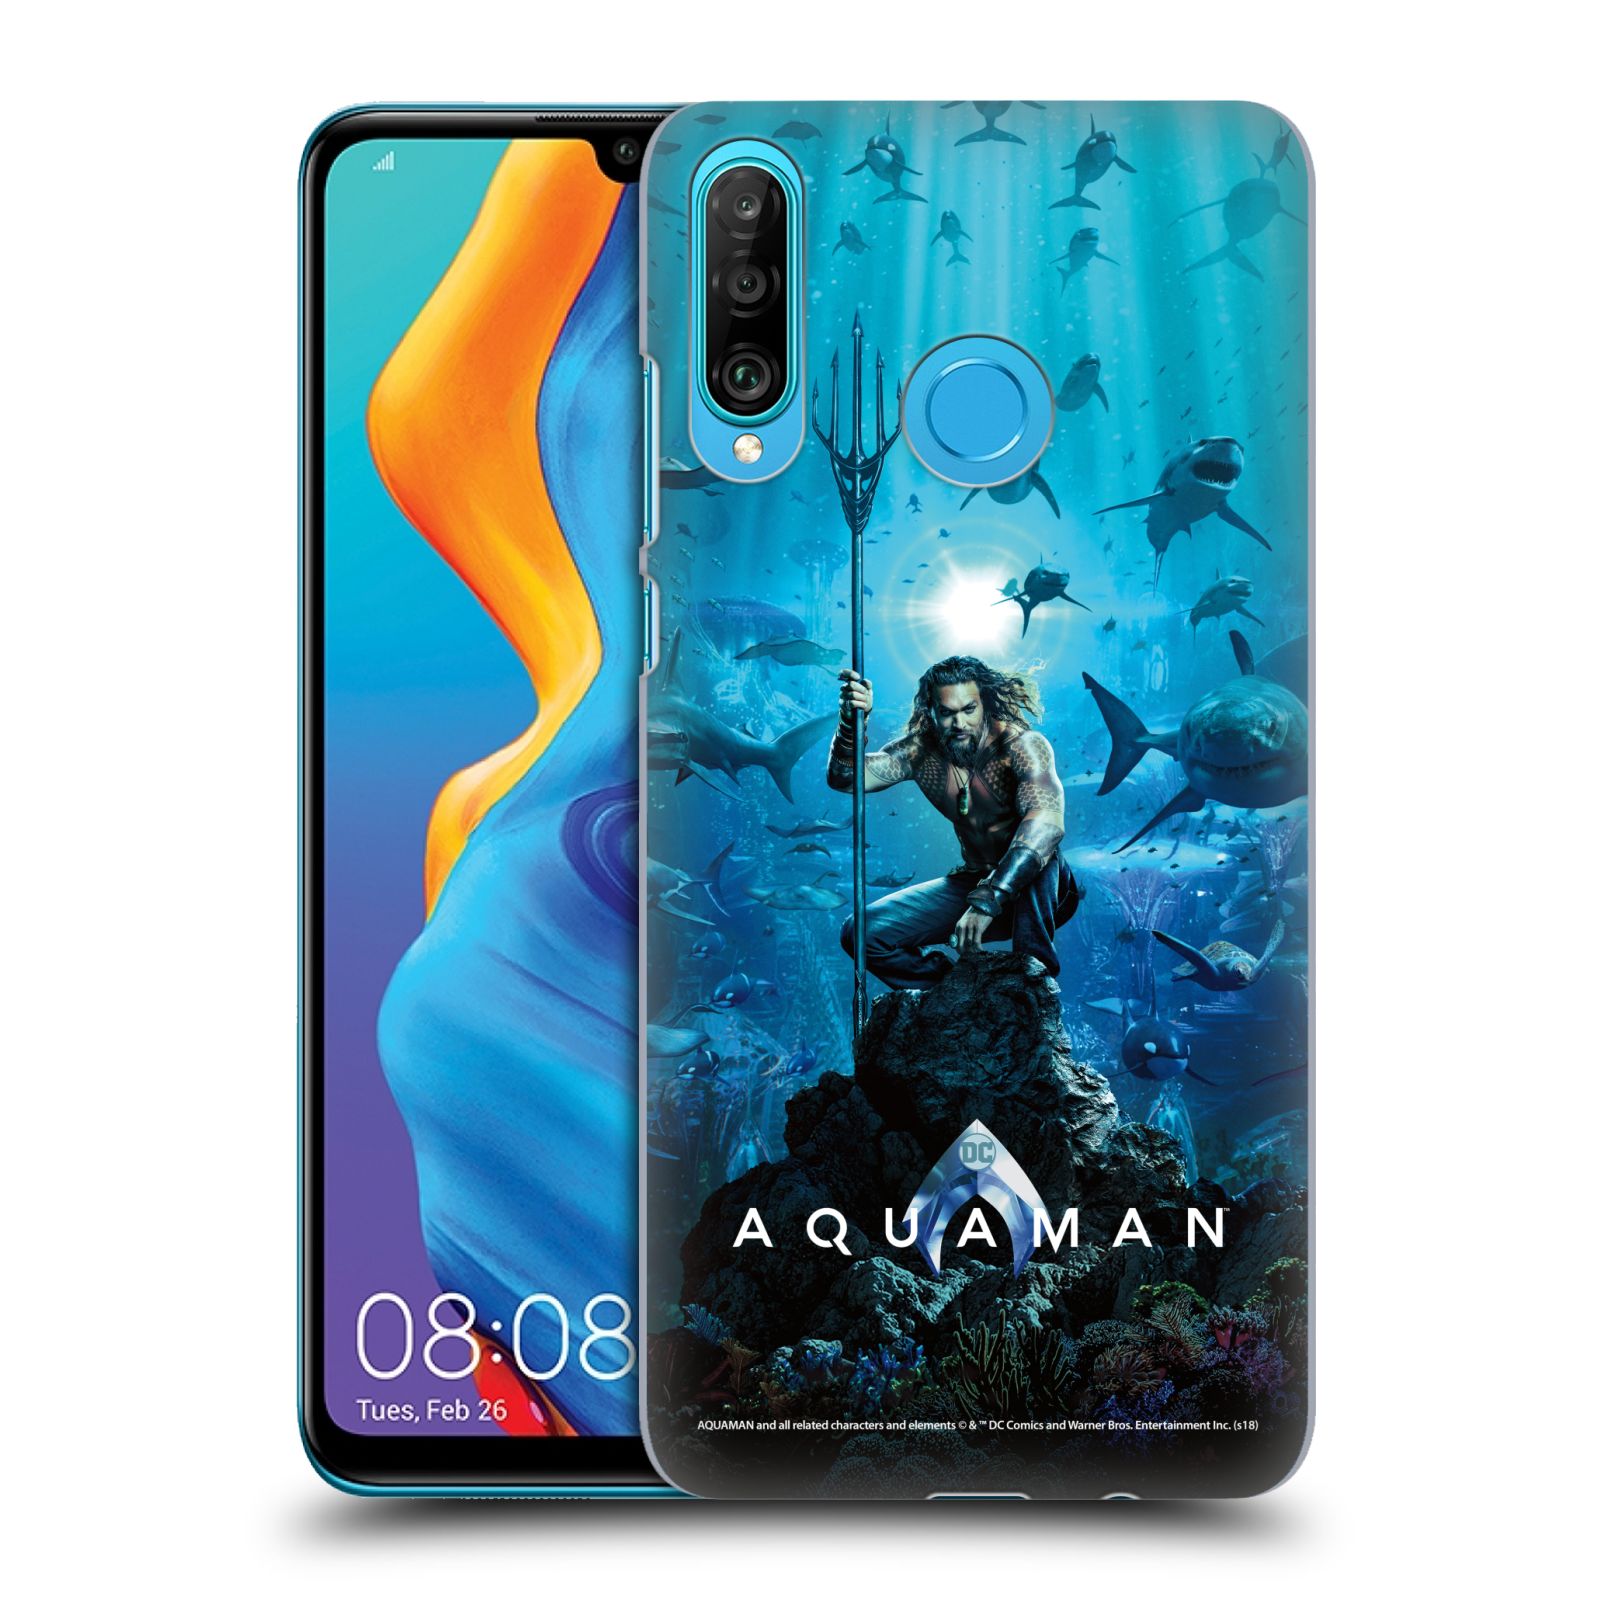 Pouzdro na mobil Huawei P30 LITE - HEAD CASE - Aquaman trojzubec